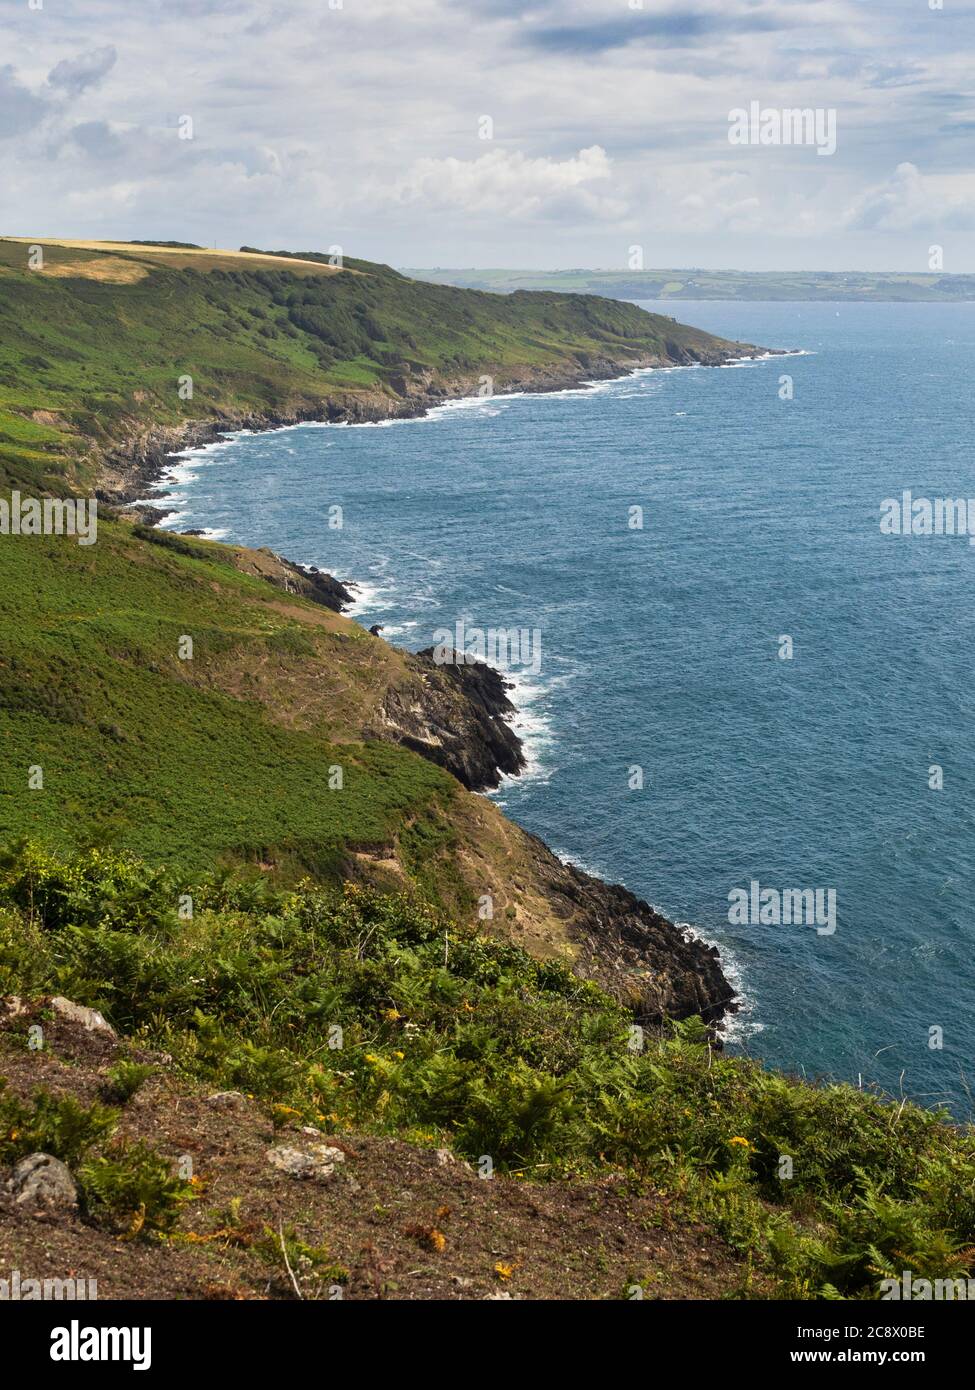 La côte du patrimoine de Rame Head, une région d'une beauté naturelle exceptionnelle dans le sud-est de Cornwall, au Royaume-Uni Banque D'Images